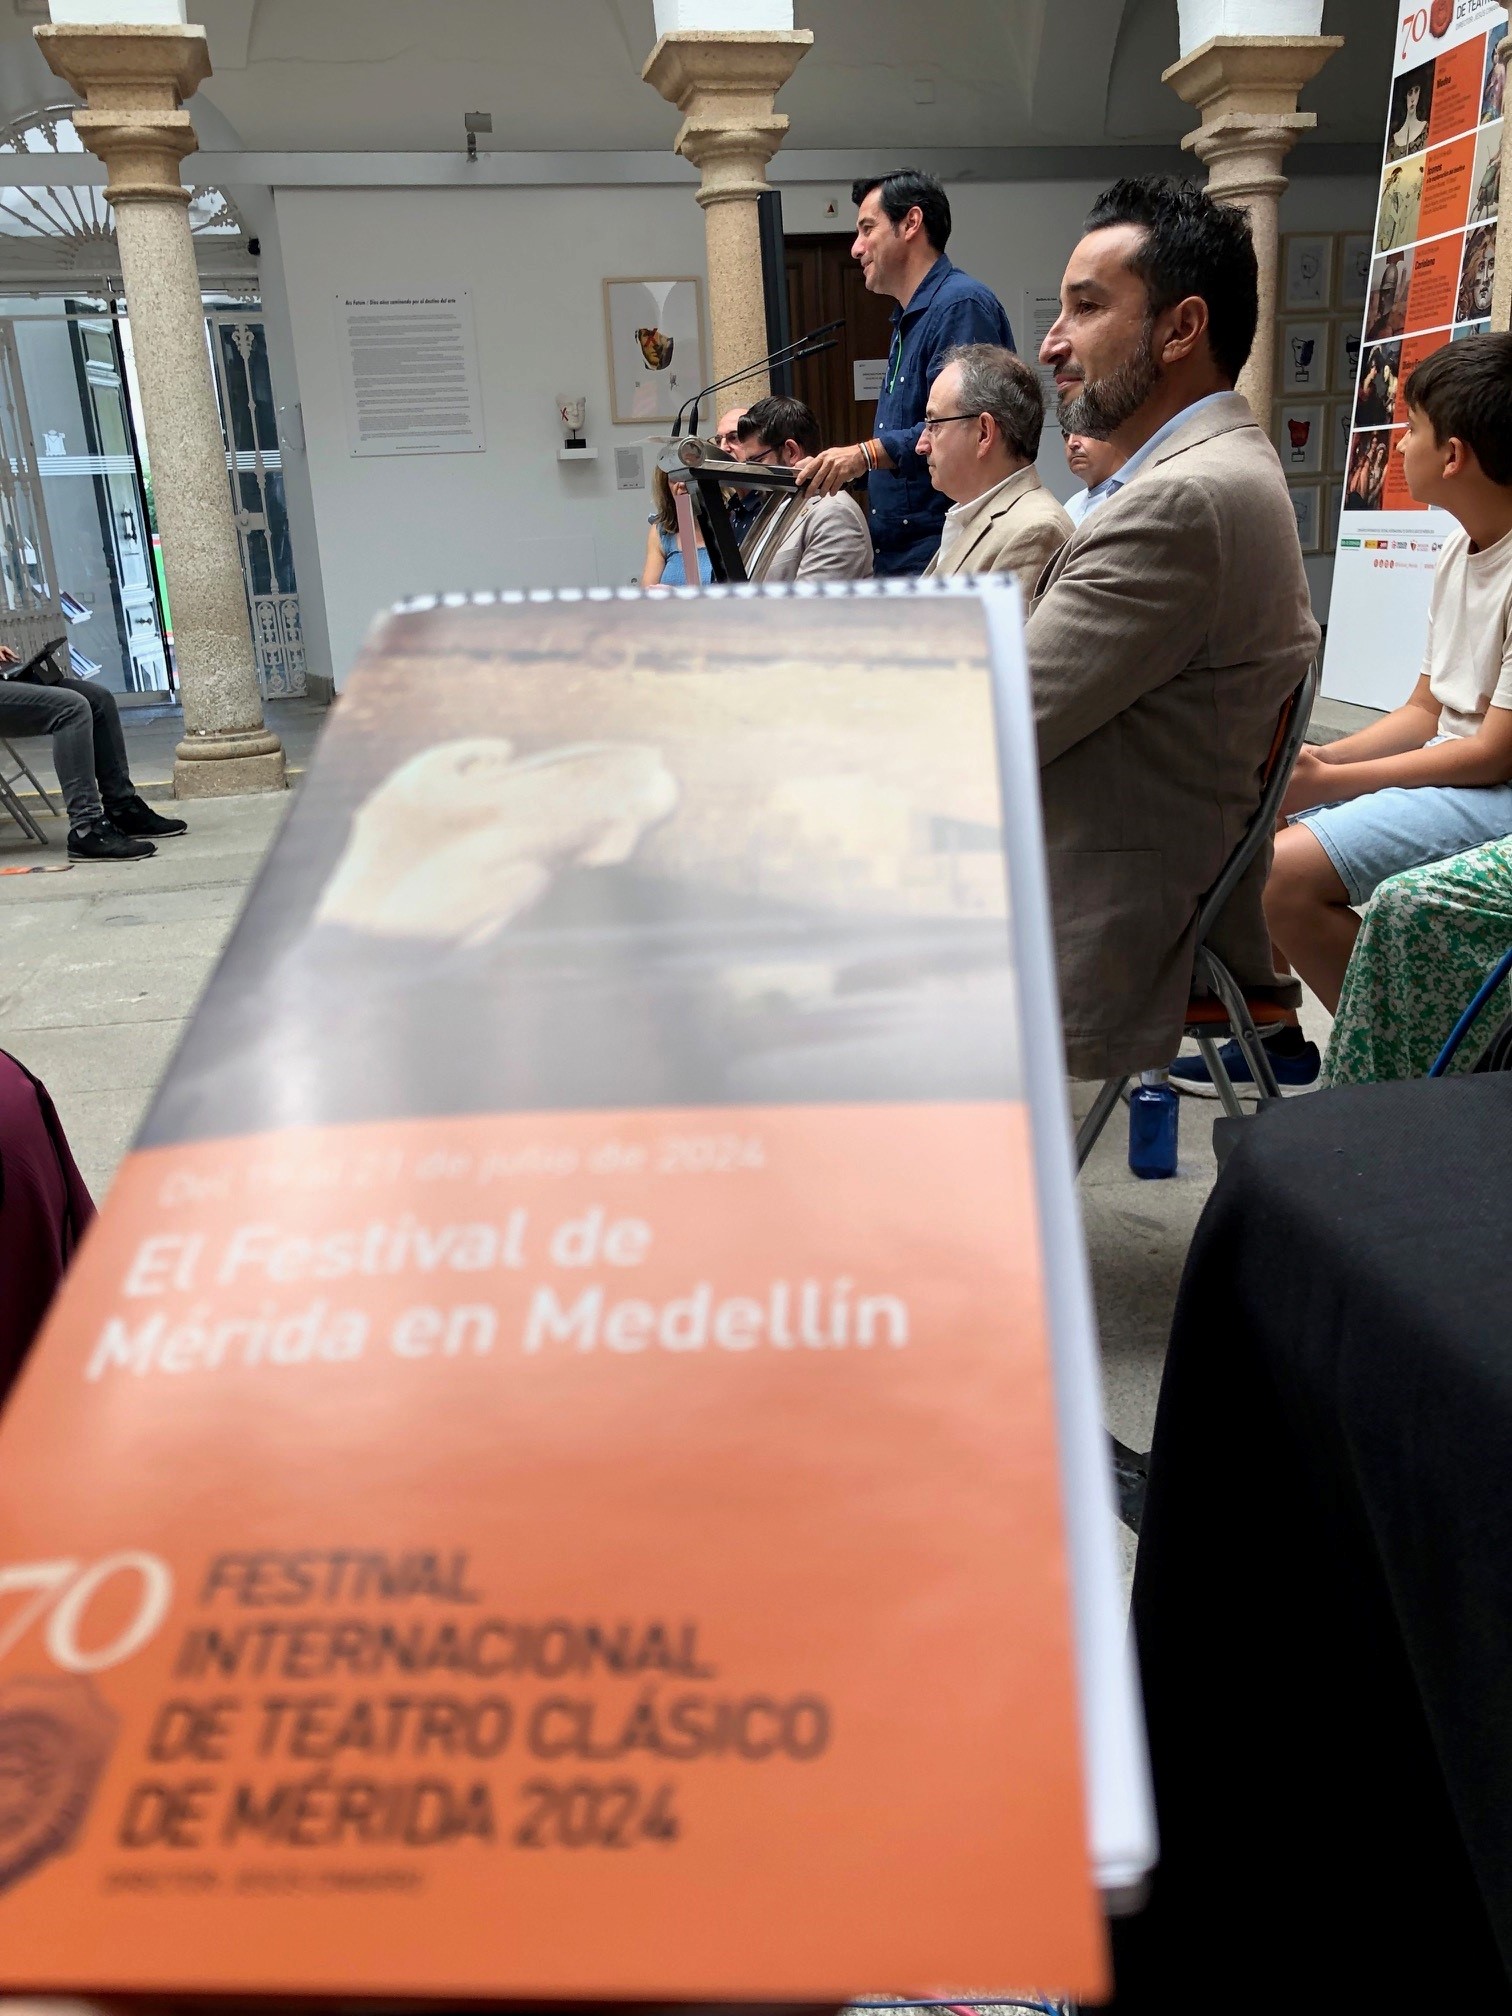 Image 1 of article El Festival de Mérida lleva al Teatro de Medellín dos comedias y un musical